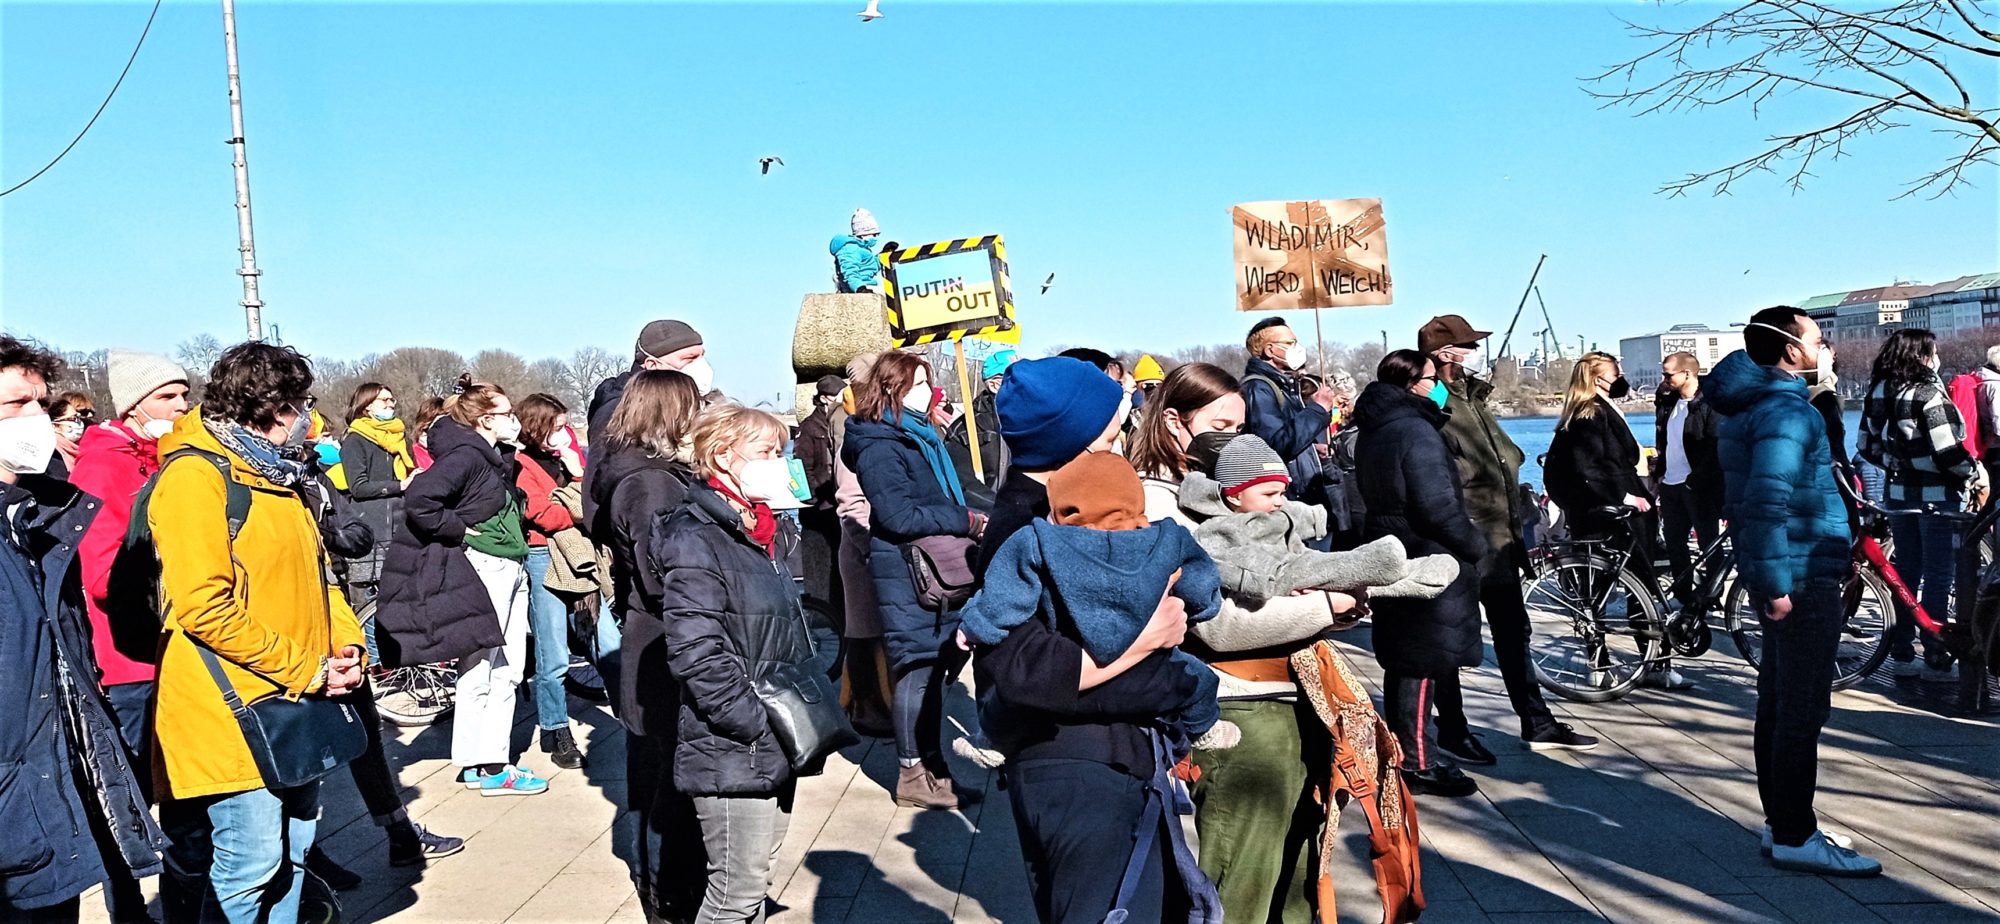 демонстрація проти війни в Україні у Німеччині